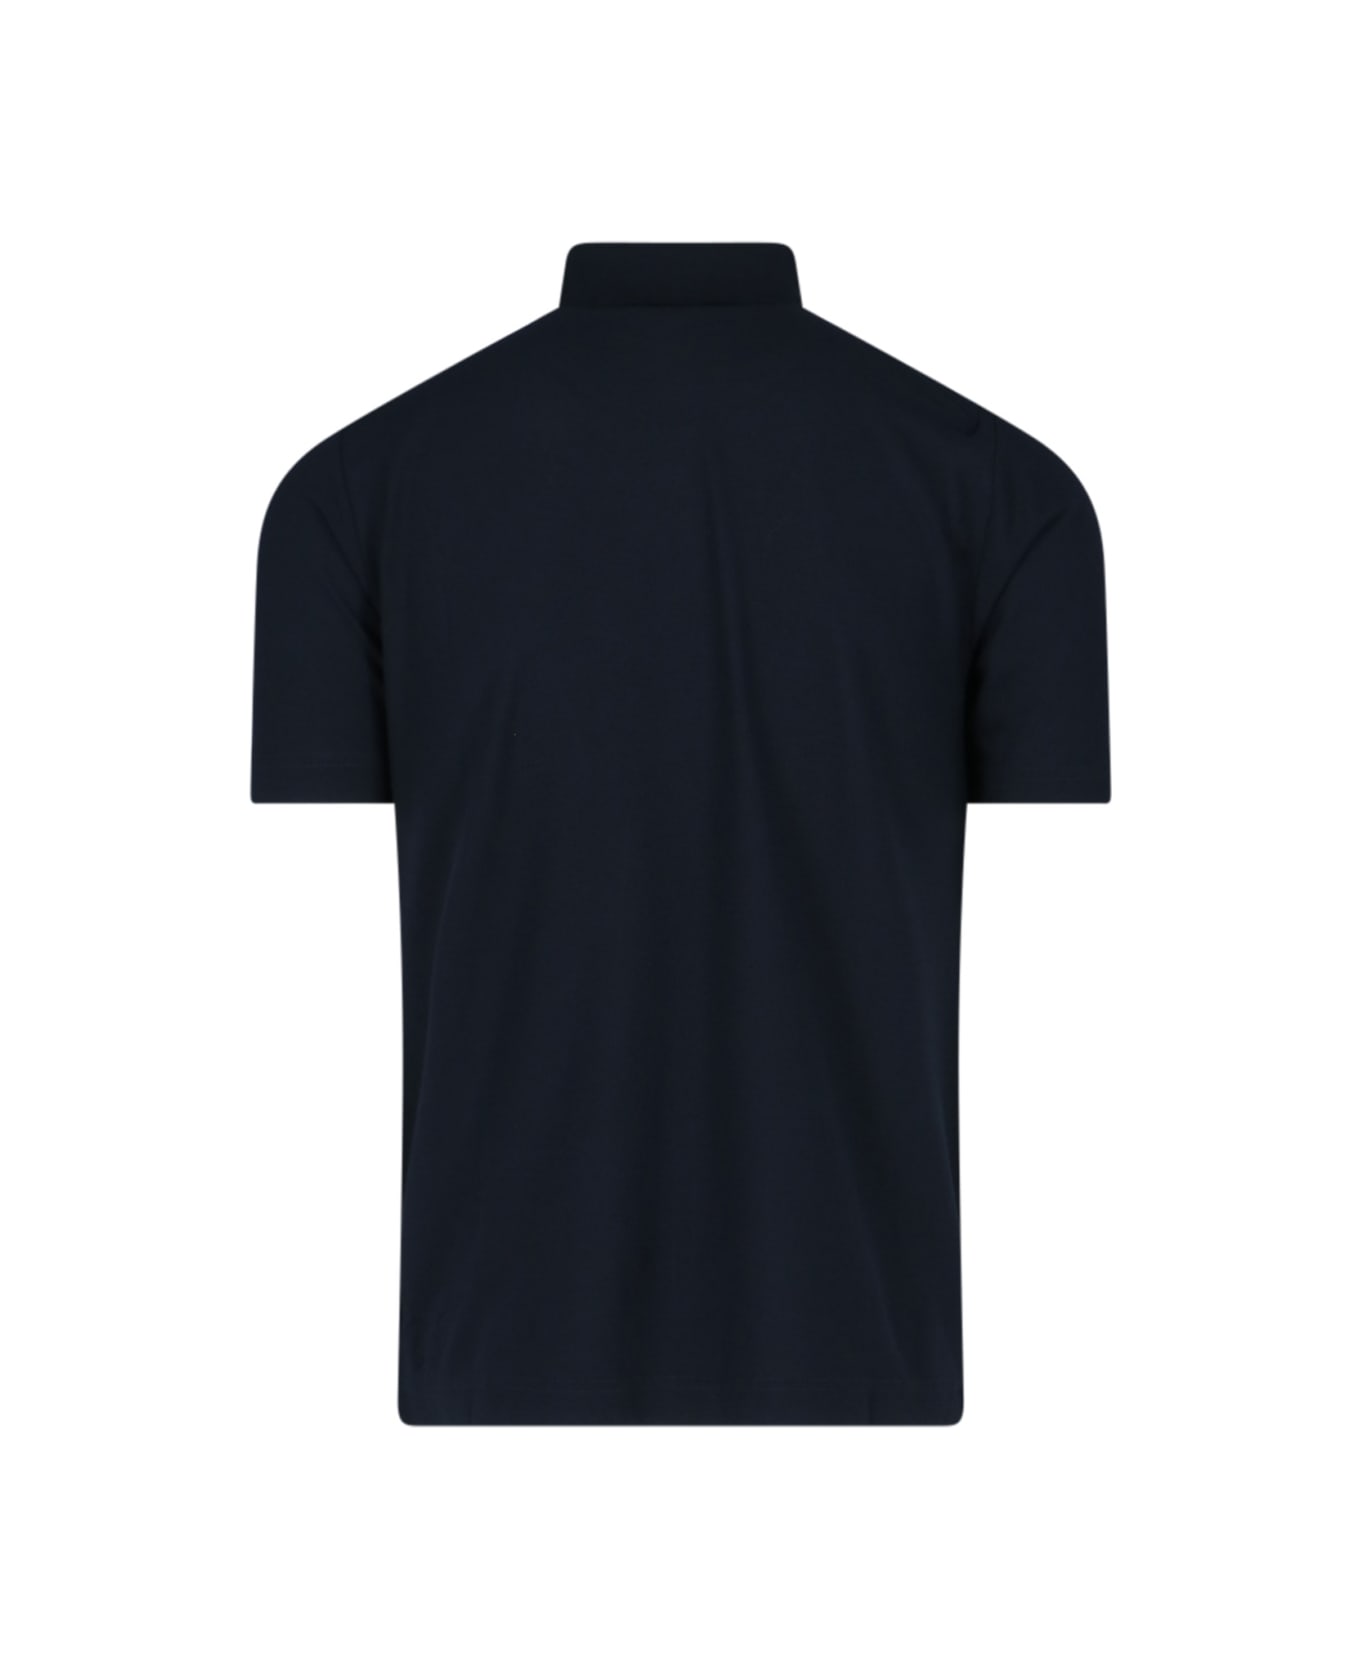 Zanone Basic Polo Shirt - Blue